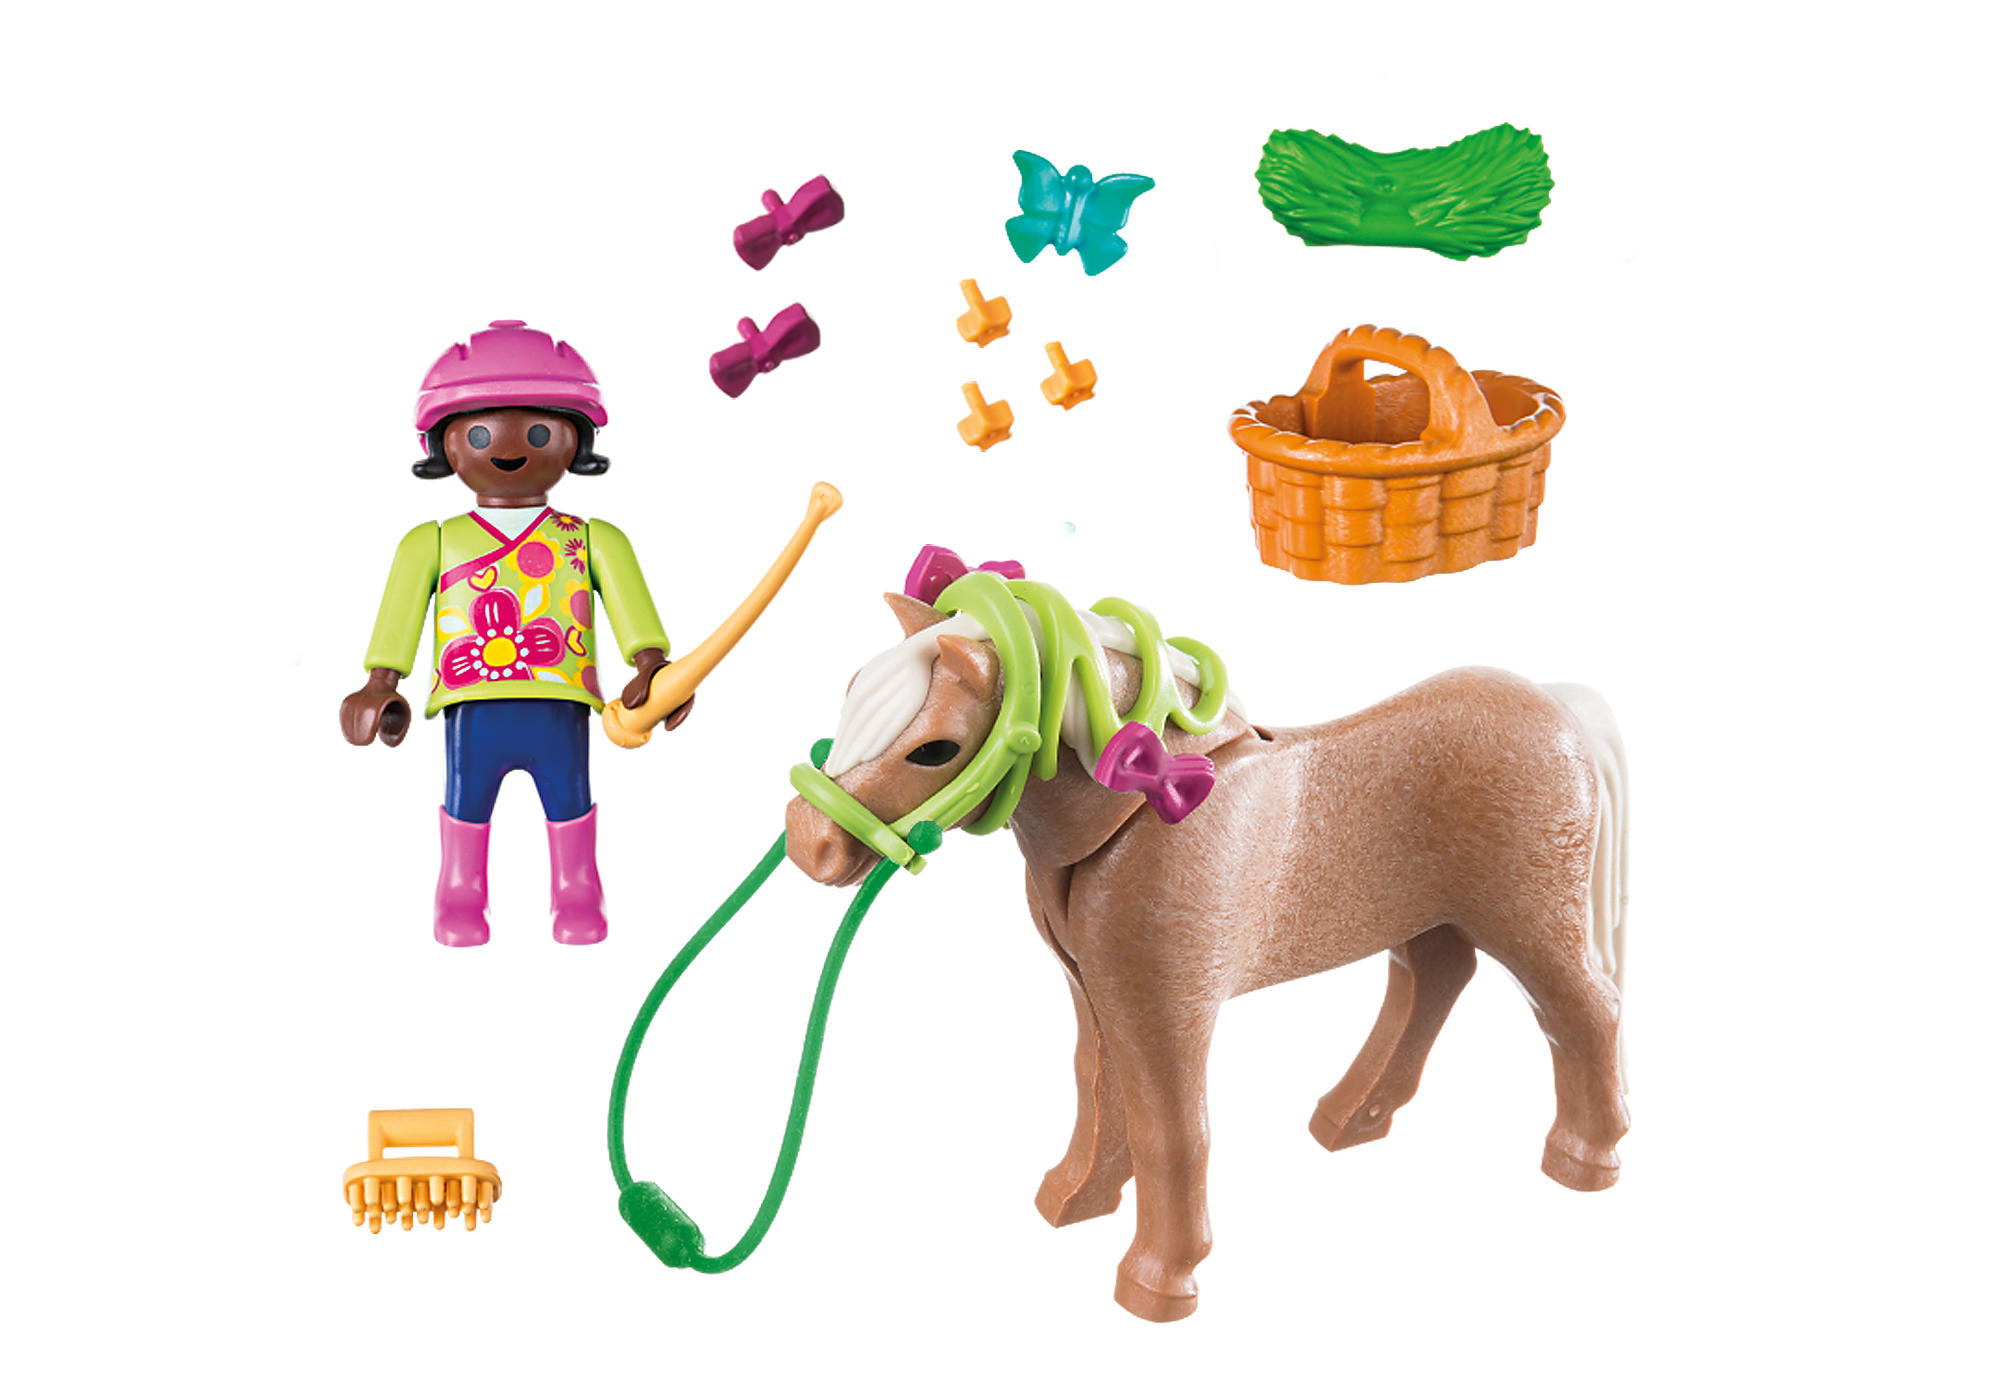 Playmobil 4316 transporte de cavalos, cliques, famill, original, brinquedos  para crianças, jogos de meninas, presentes originais, colecionador